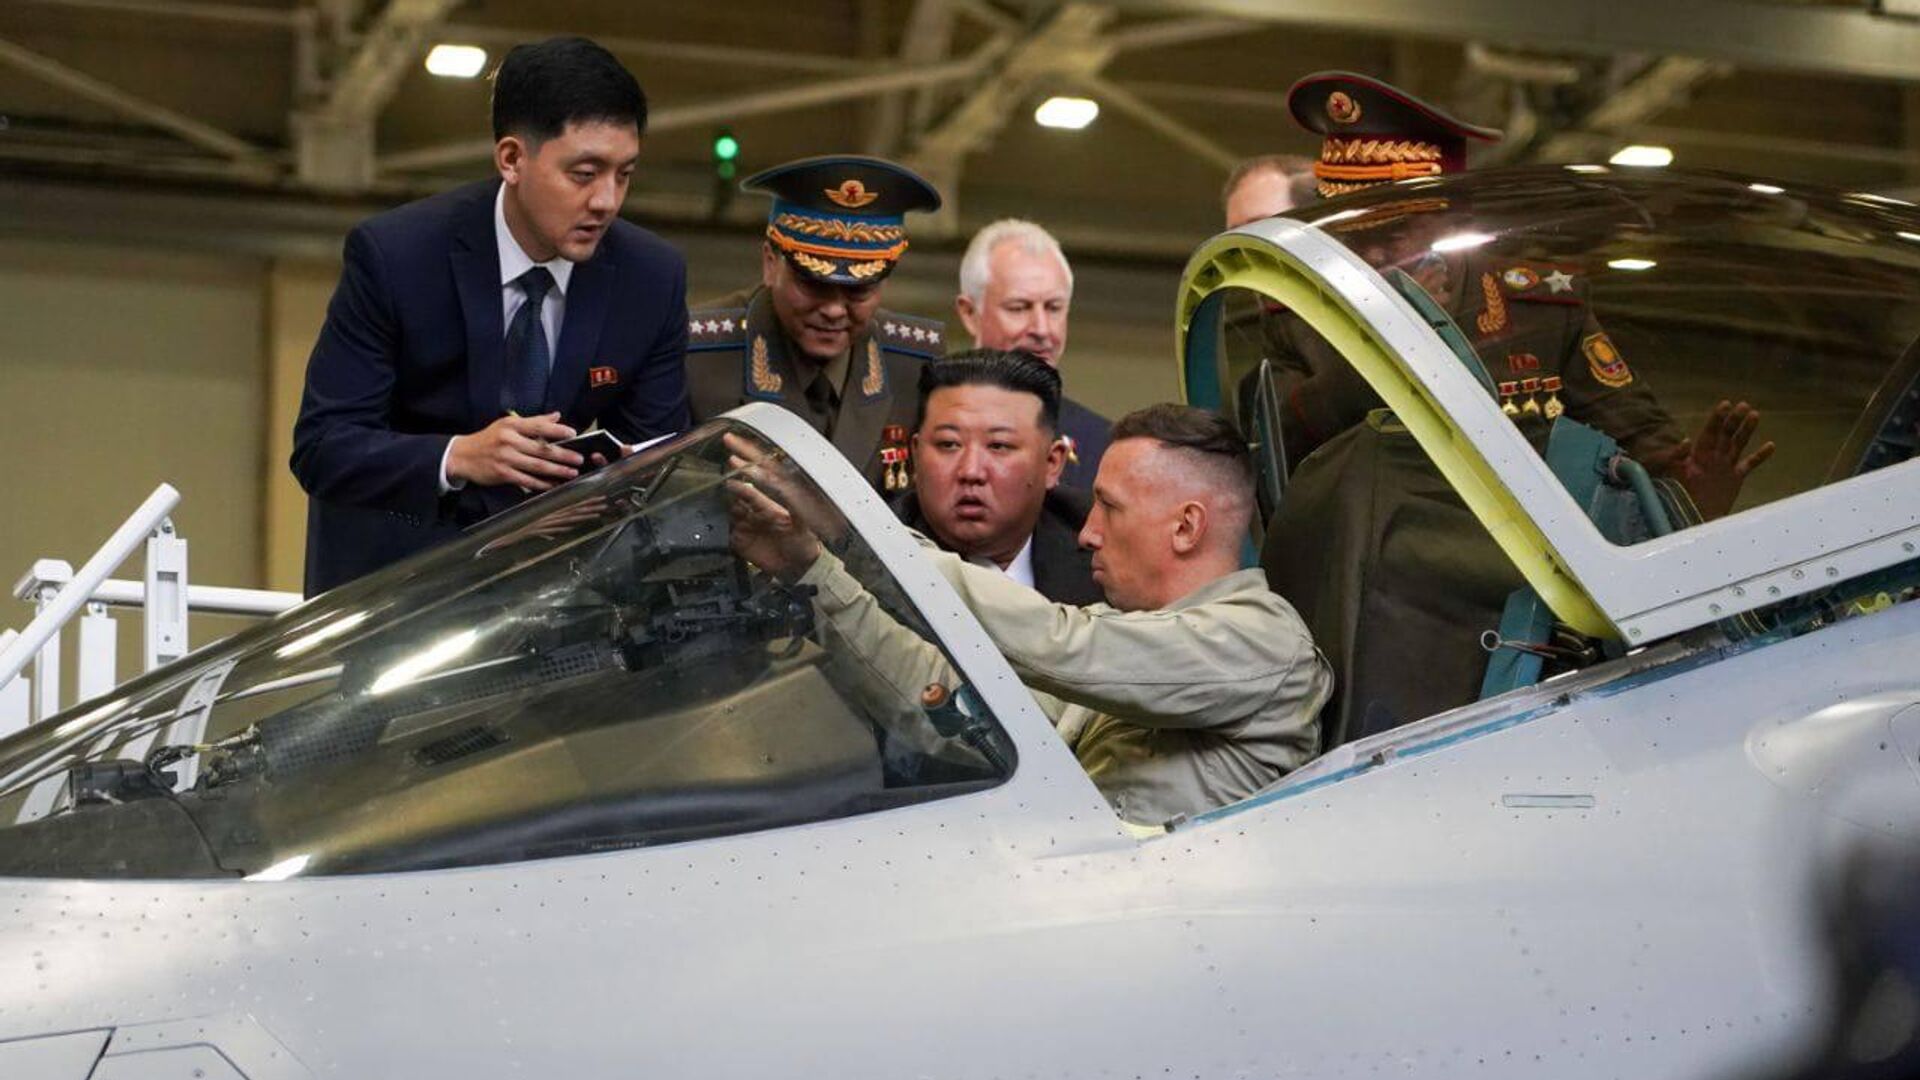 کیم جونگ اون رهبر کره شمالی از کارخانه های هواپیماسازی در کومسومولسک بر...